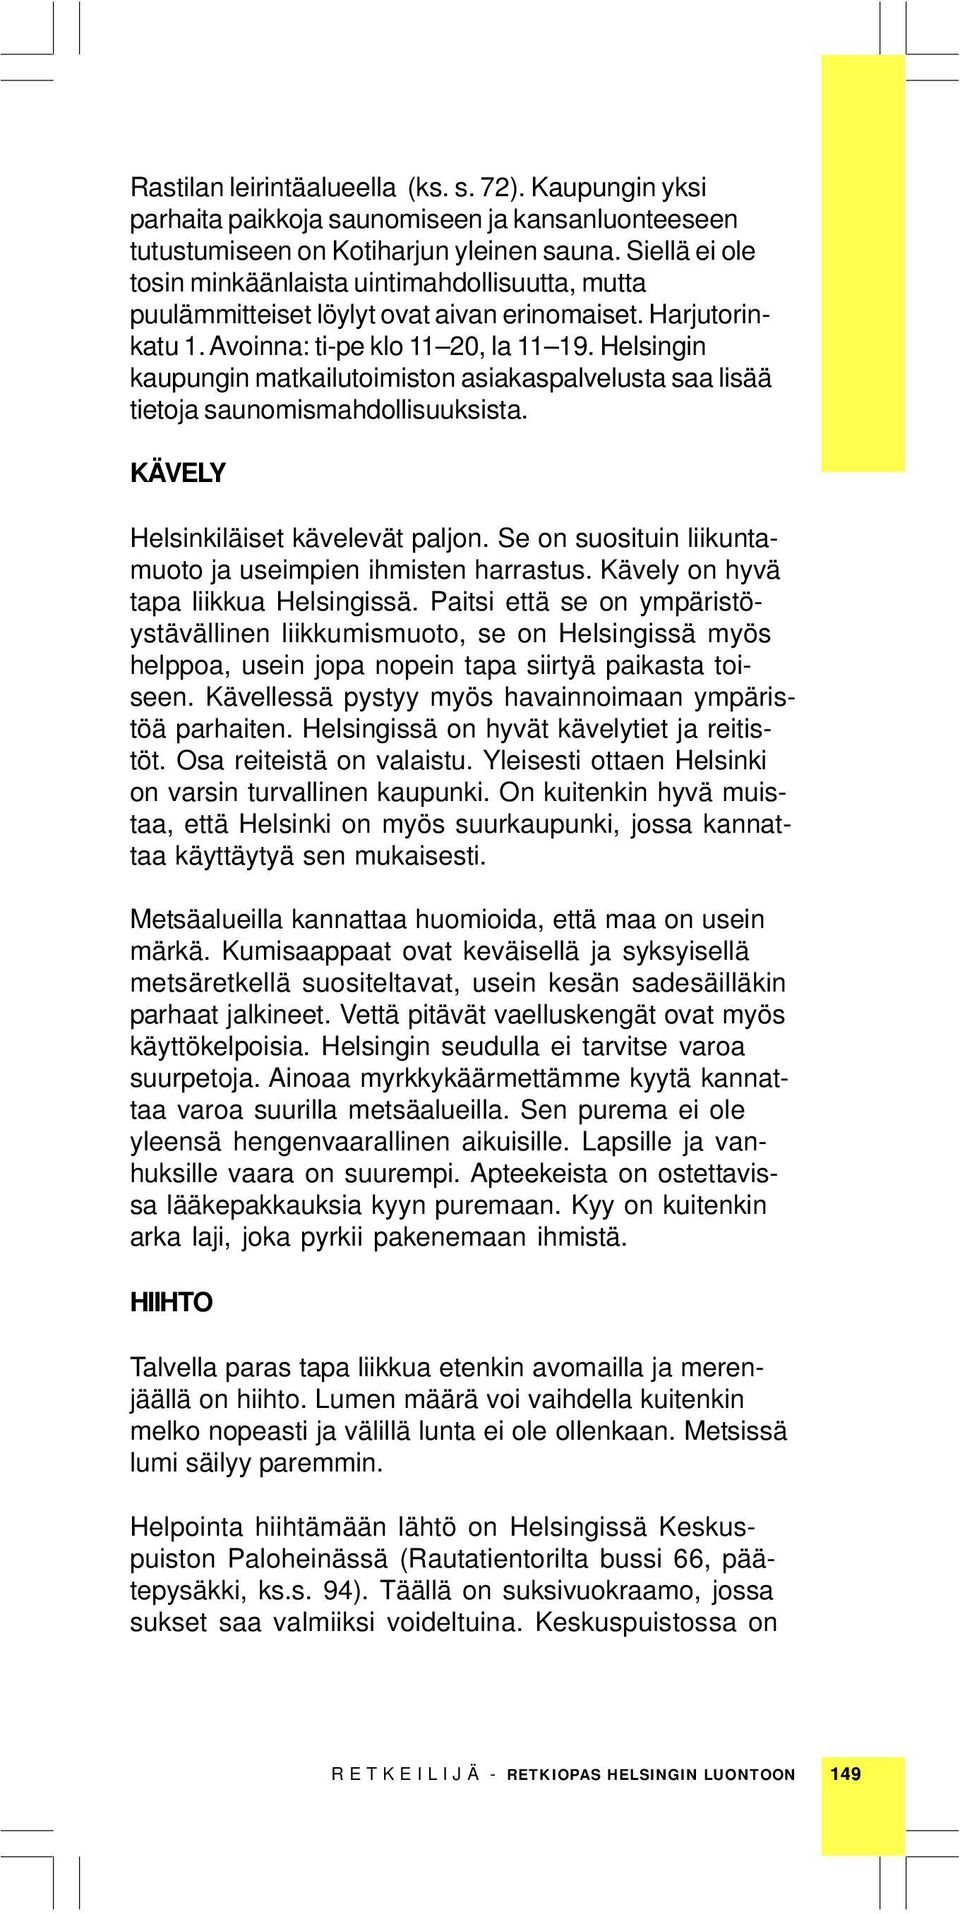 Helsingin kaupungin matkailutoimiston asiakaspalvelusta saa lisää tietoja saunomismahdollisuuksista. KÄVELY Helsinkiläiset kävelevät paljon.